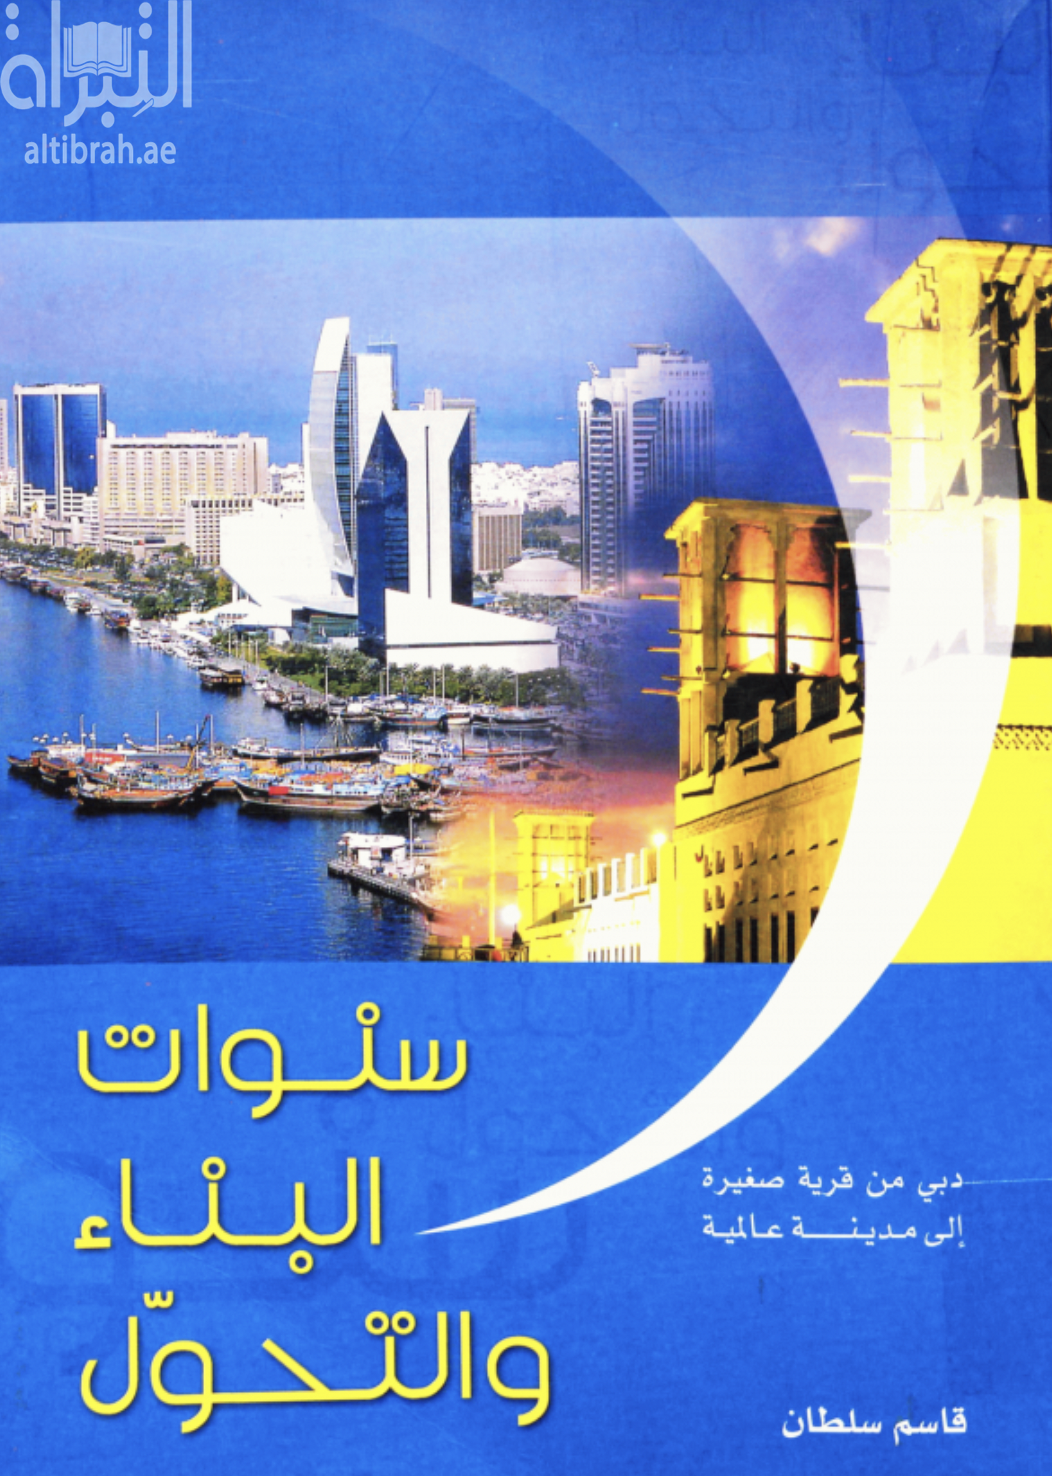 غلاف كتاب سنوات البناء و التحول : دبي من قرية صغيرة إلى مدينة عالمية